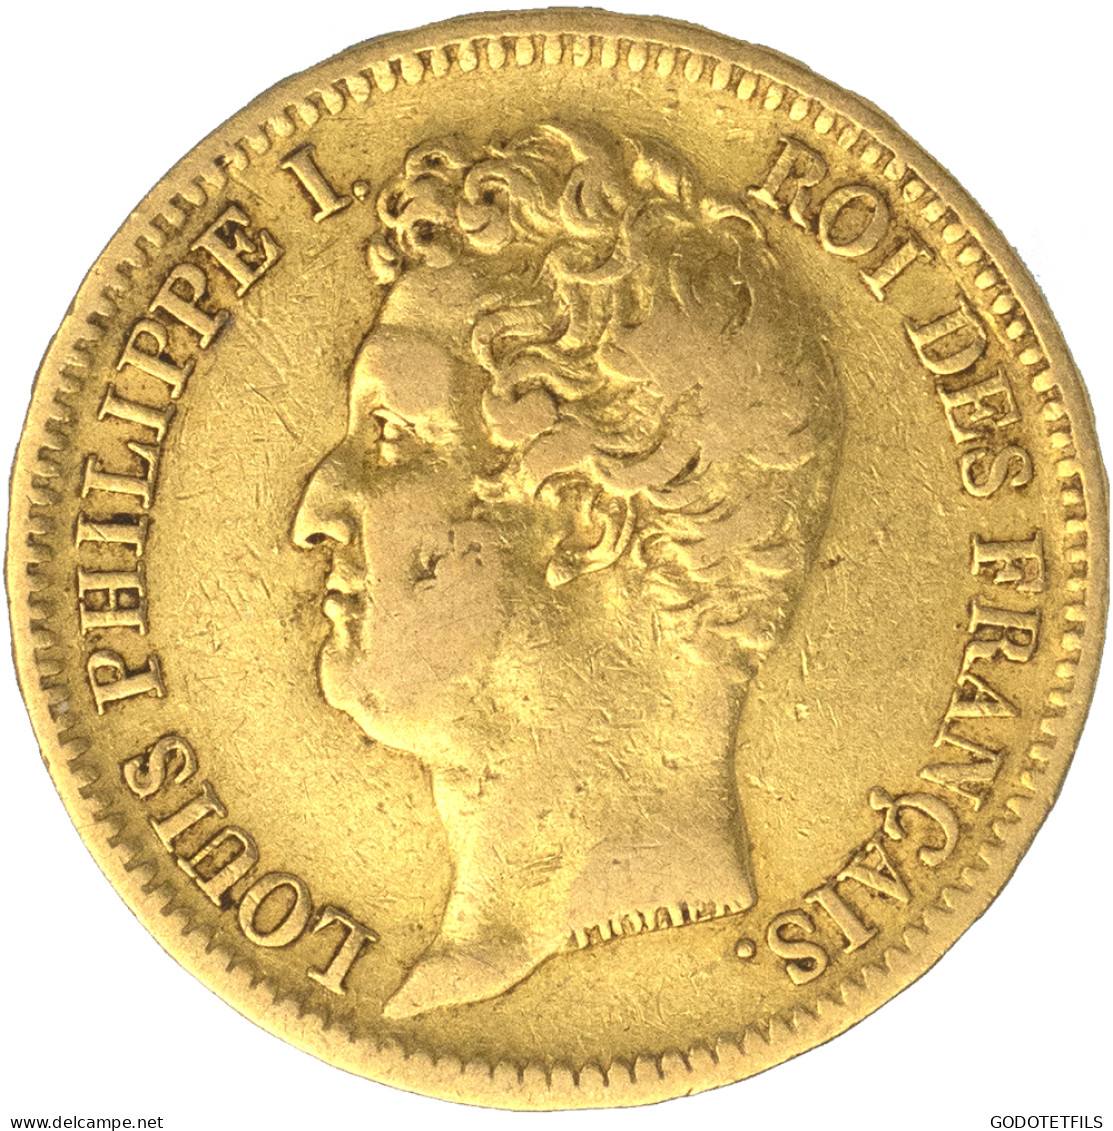 Louis-Philippe-20 Francs 1831 Rouen - 20 Francs (gold)